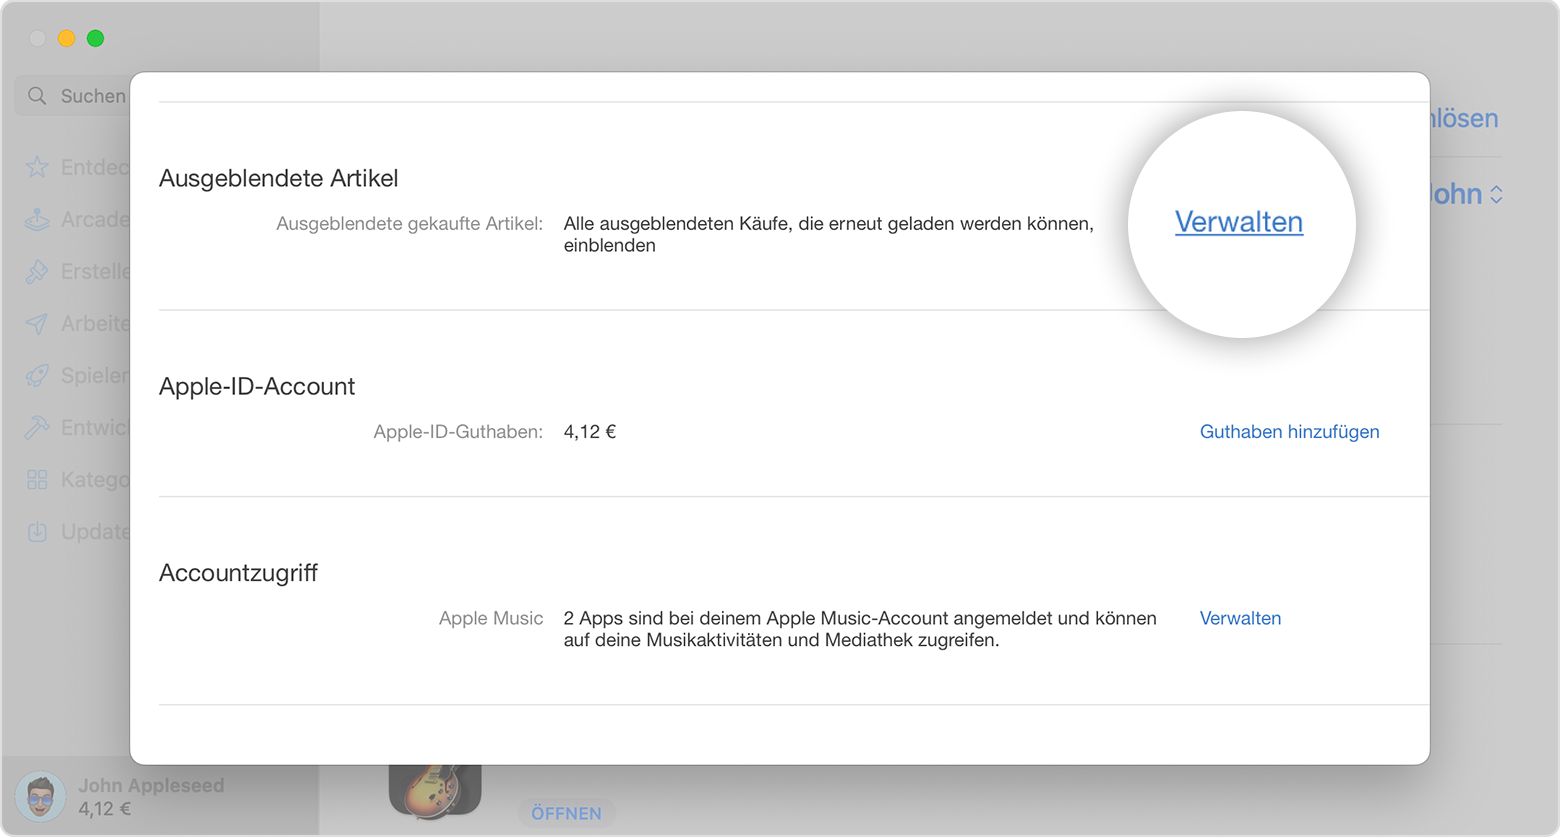 App Store auf dem Mac mit dem Bereich "Ausgeblendete Artikel" der Seite mit den Accountinformationen. Die Taste "Verwalten" ist im Bild hervorgehoben.